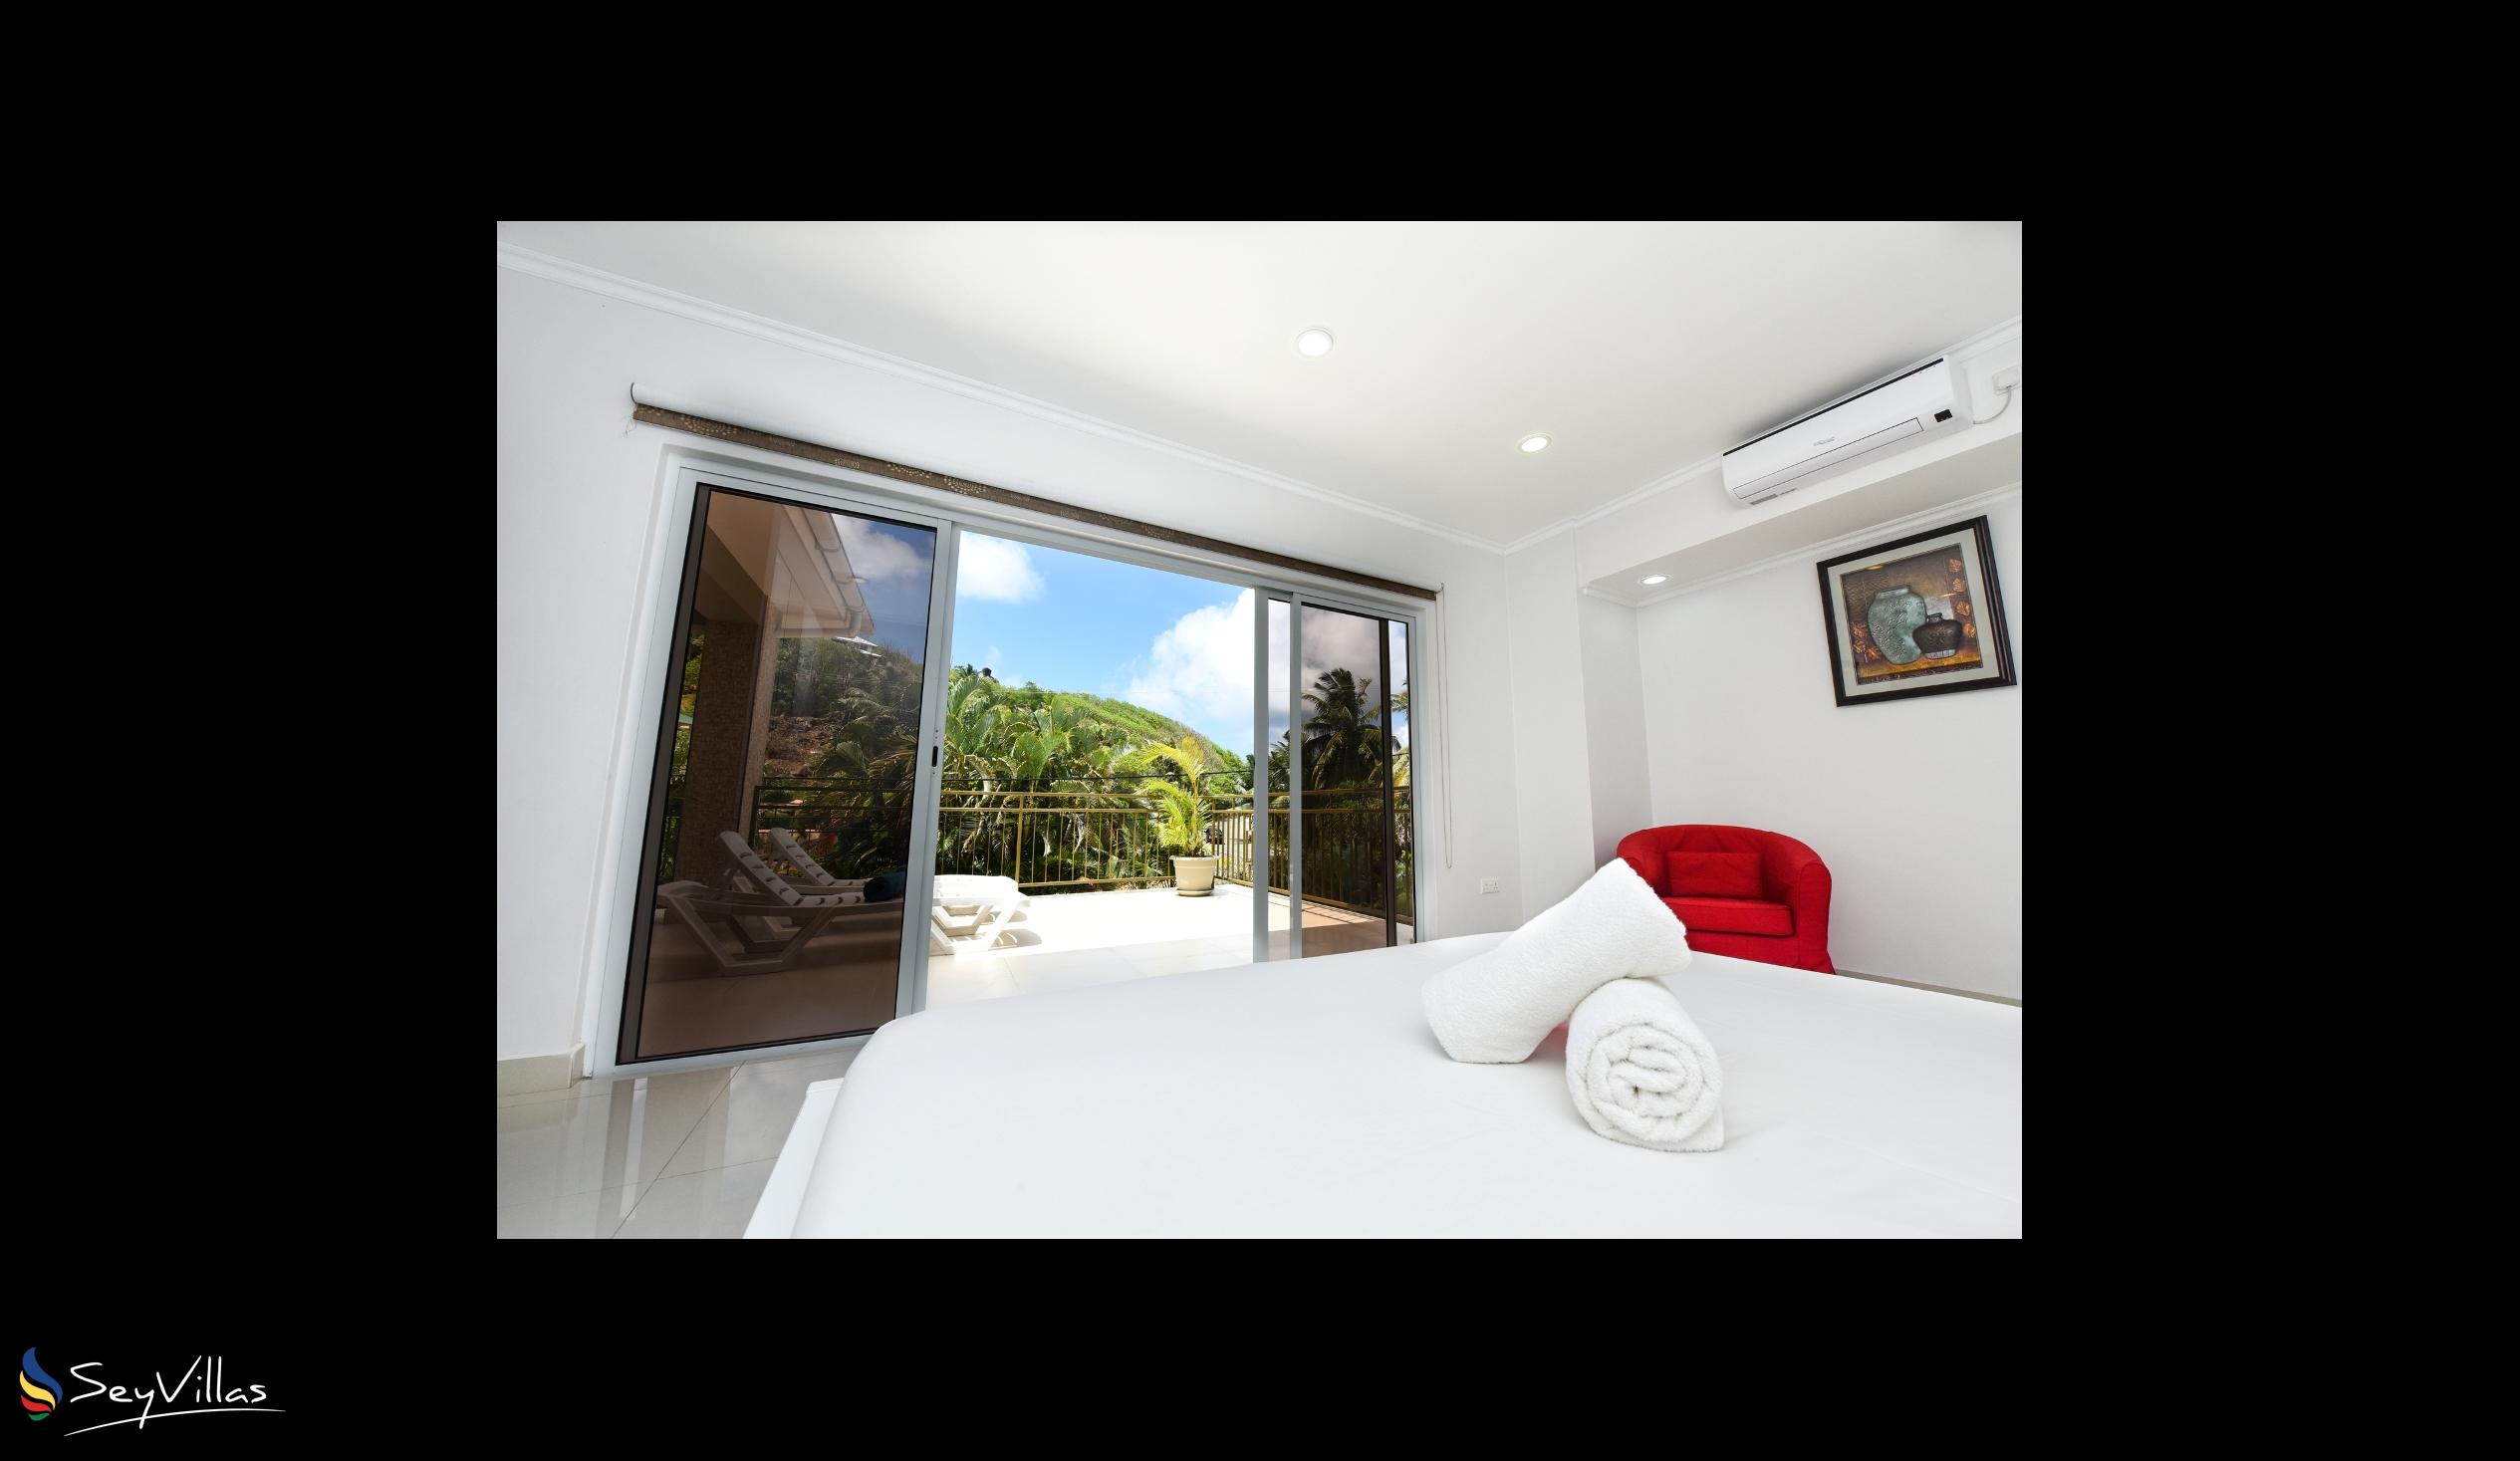 Foto 26: Moulin Kann Villas - Appartement 2 chambres - Mahé (Seychelles)